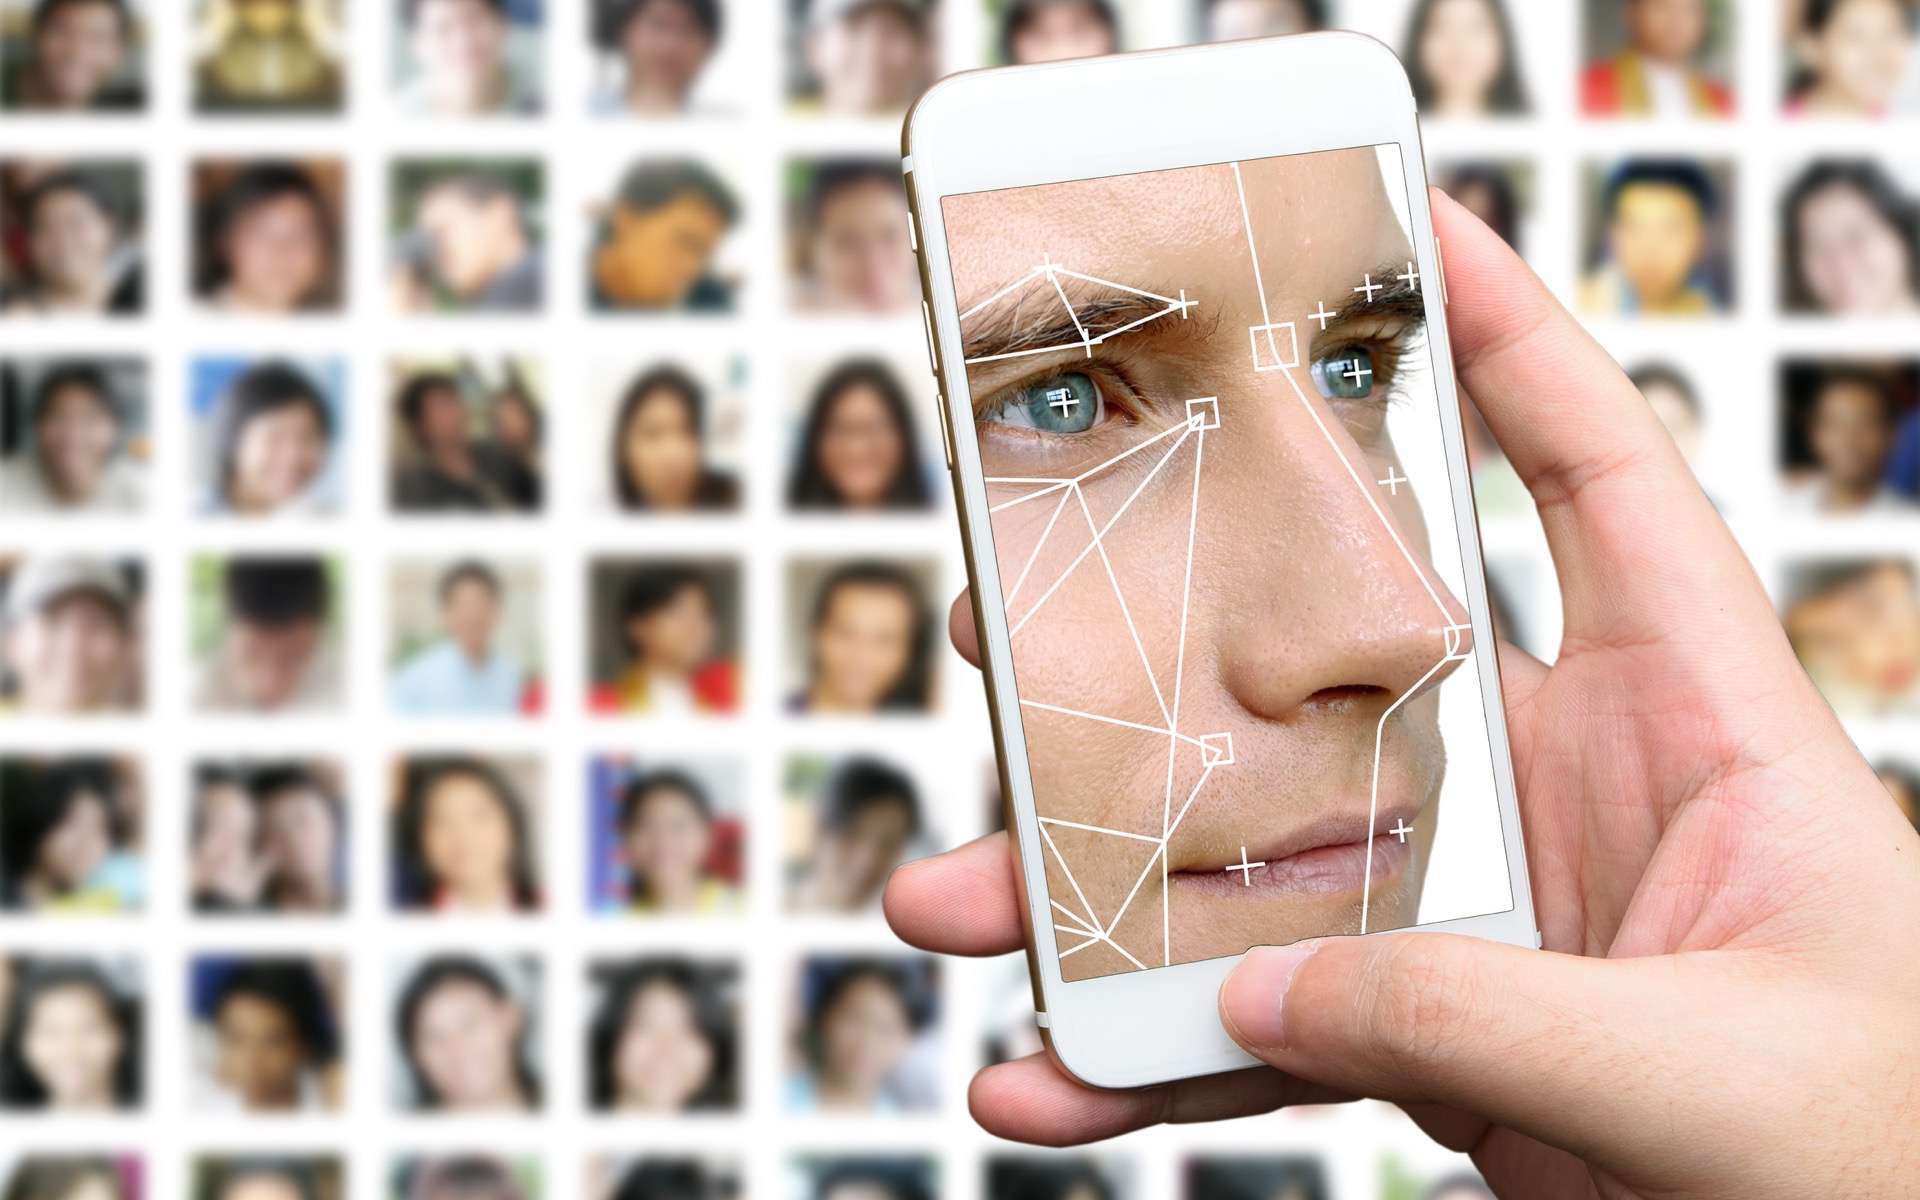 Les visages générés par l'Intelligence artificielle sont, en moyenne, perçus comme 7,7 % plus dignes de confiance que ceux des humains, selon une étude britannique. © zapp2photo, Adobe Stock